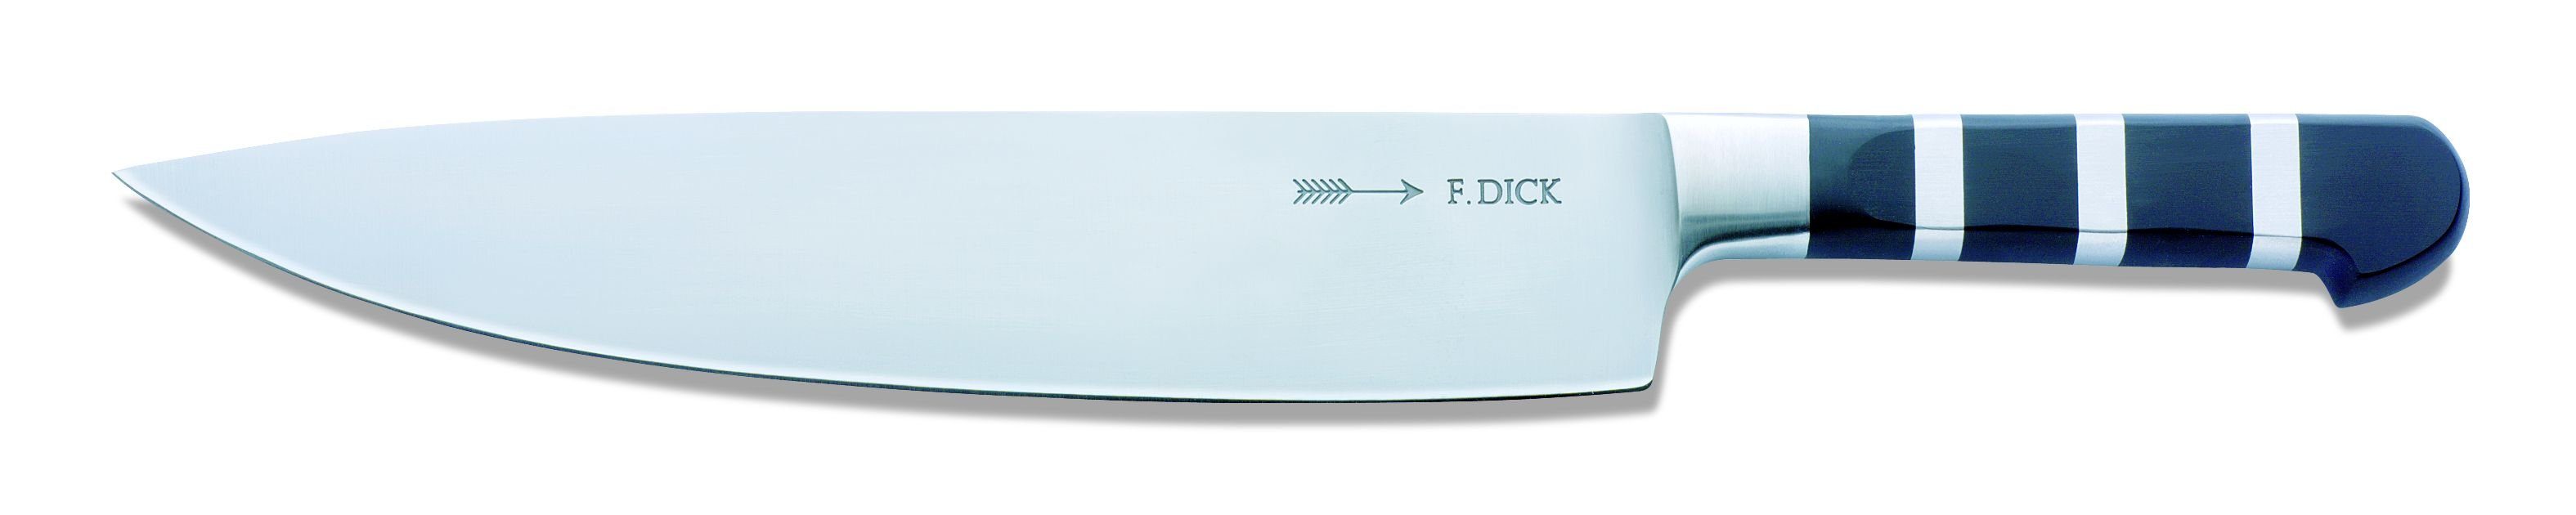 Stahl Klinge cm, F. Dick DICK Kochmesser 1905 Messer 26 Kochmesser Küchenmesser